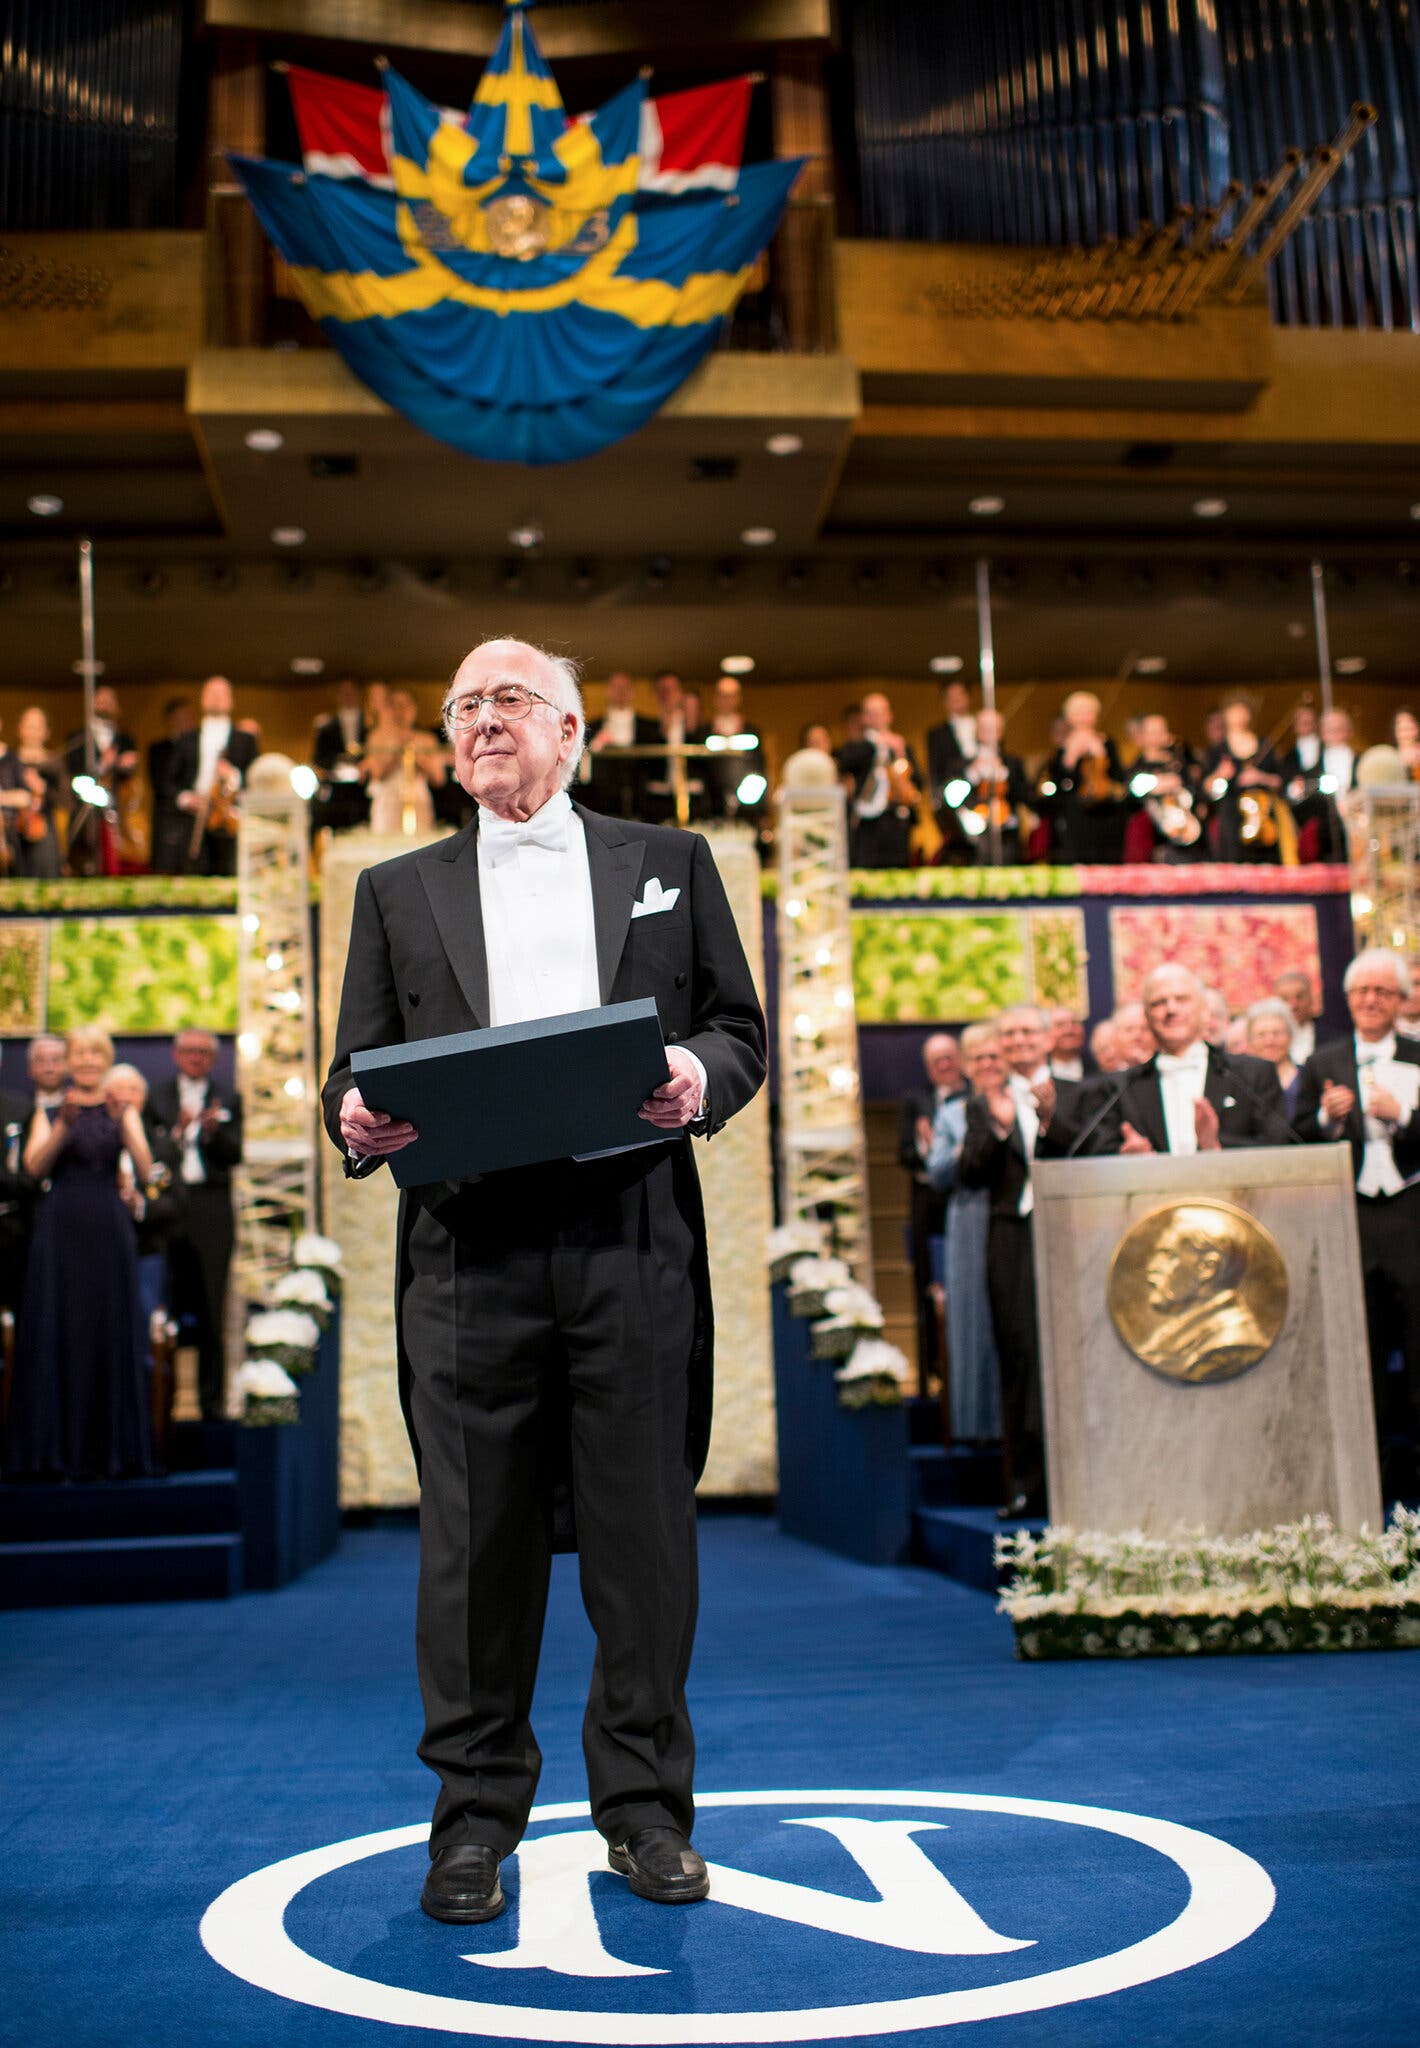  Доктор Хиггс получает Нобелевскую премию по физике на церемонии в 2013 году в Стокгольме.